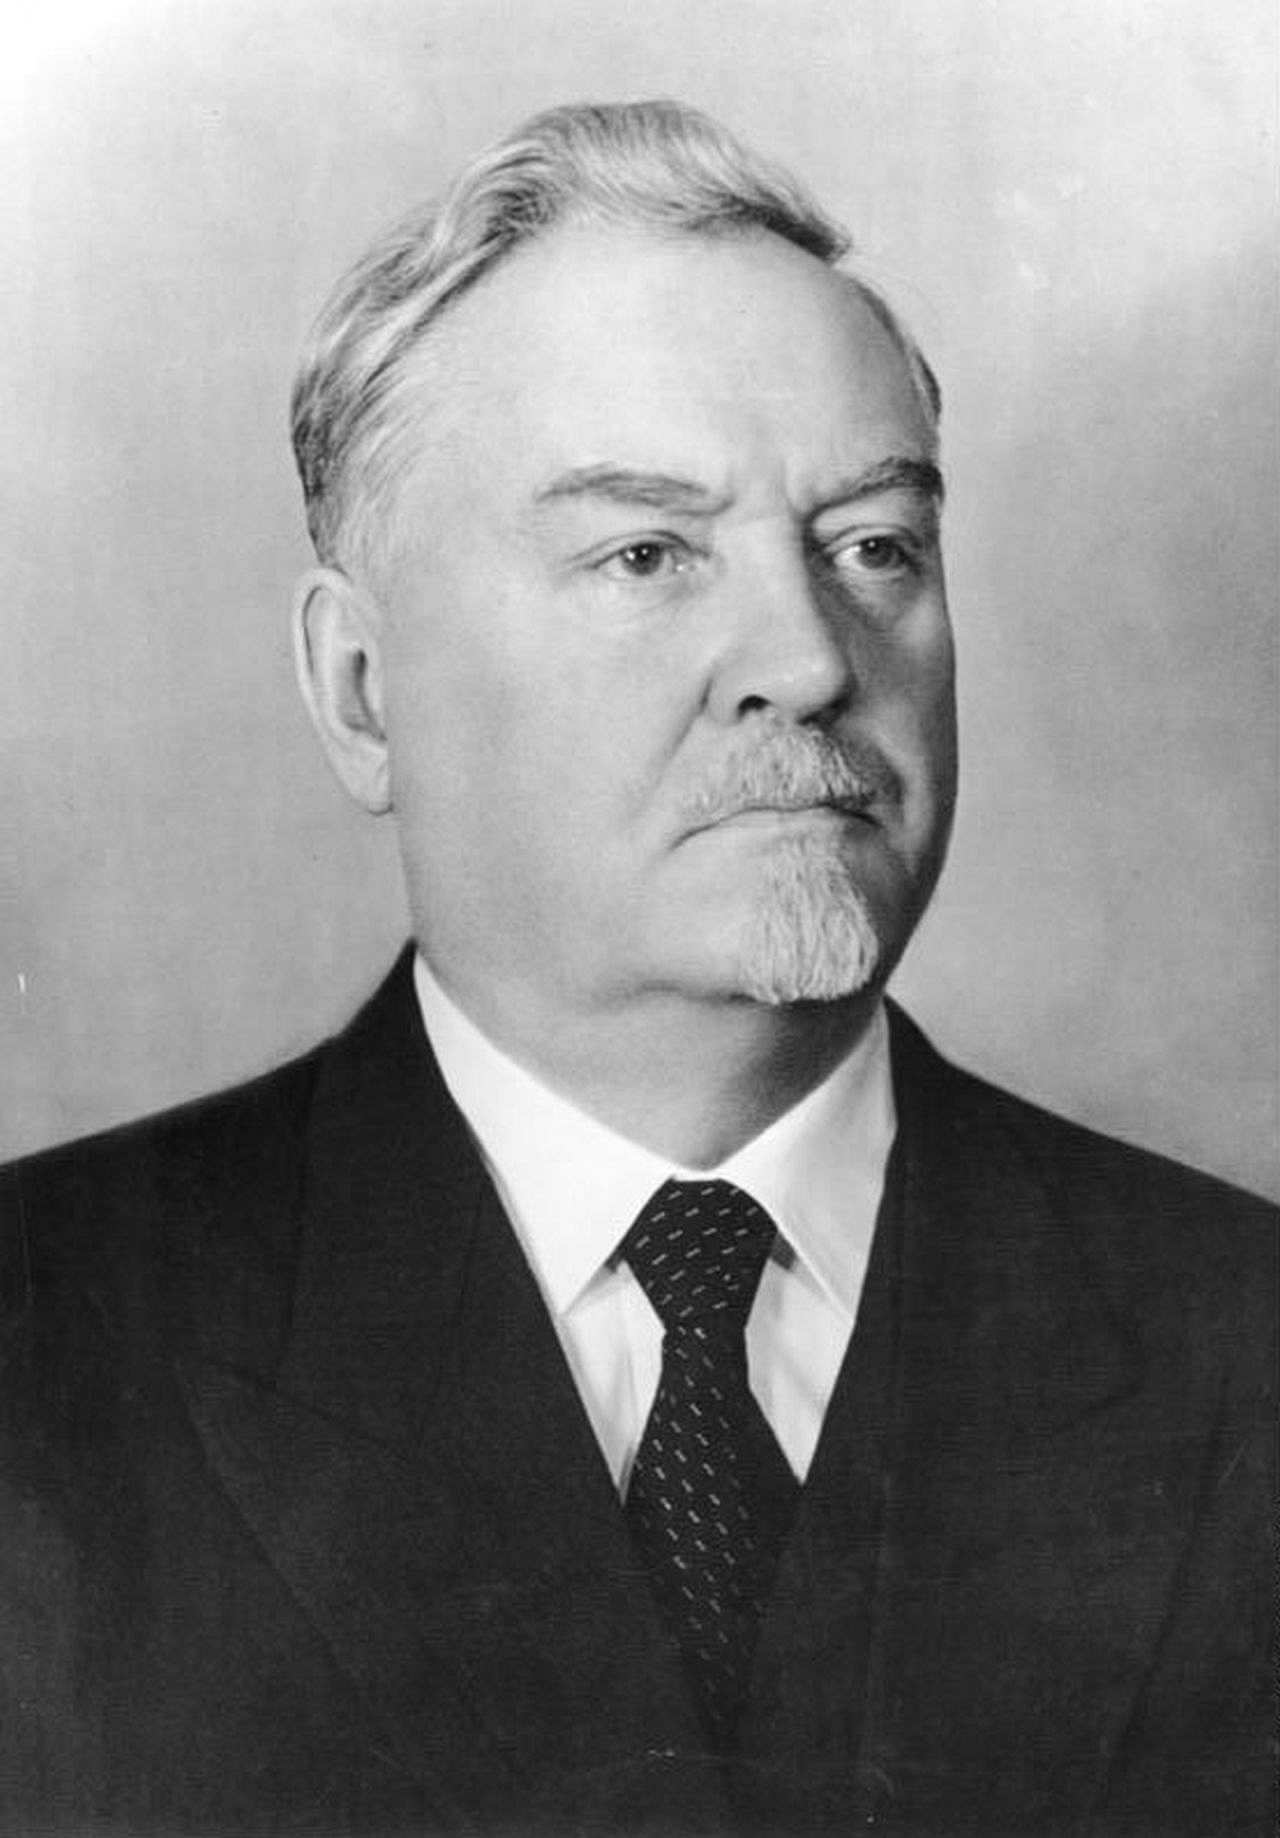 Porträtfoto des sowjetischen Politikers Nikolai Bulganin, April 1955.